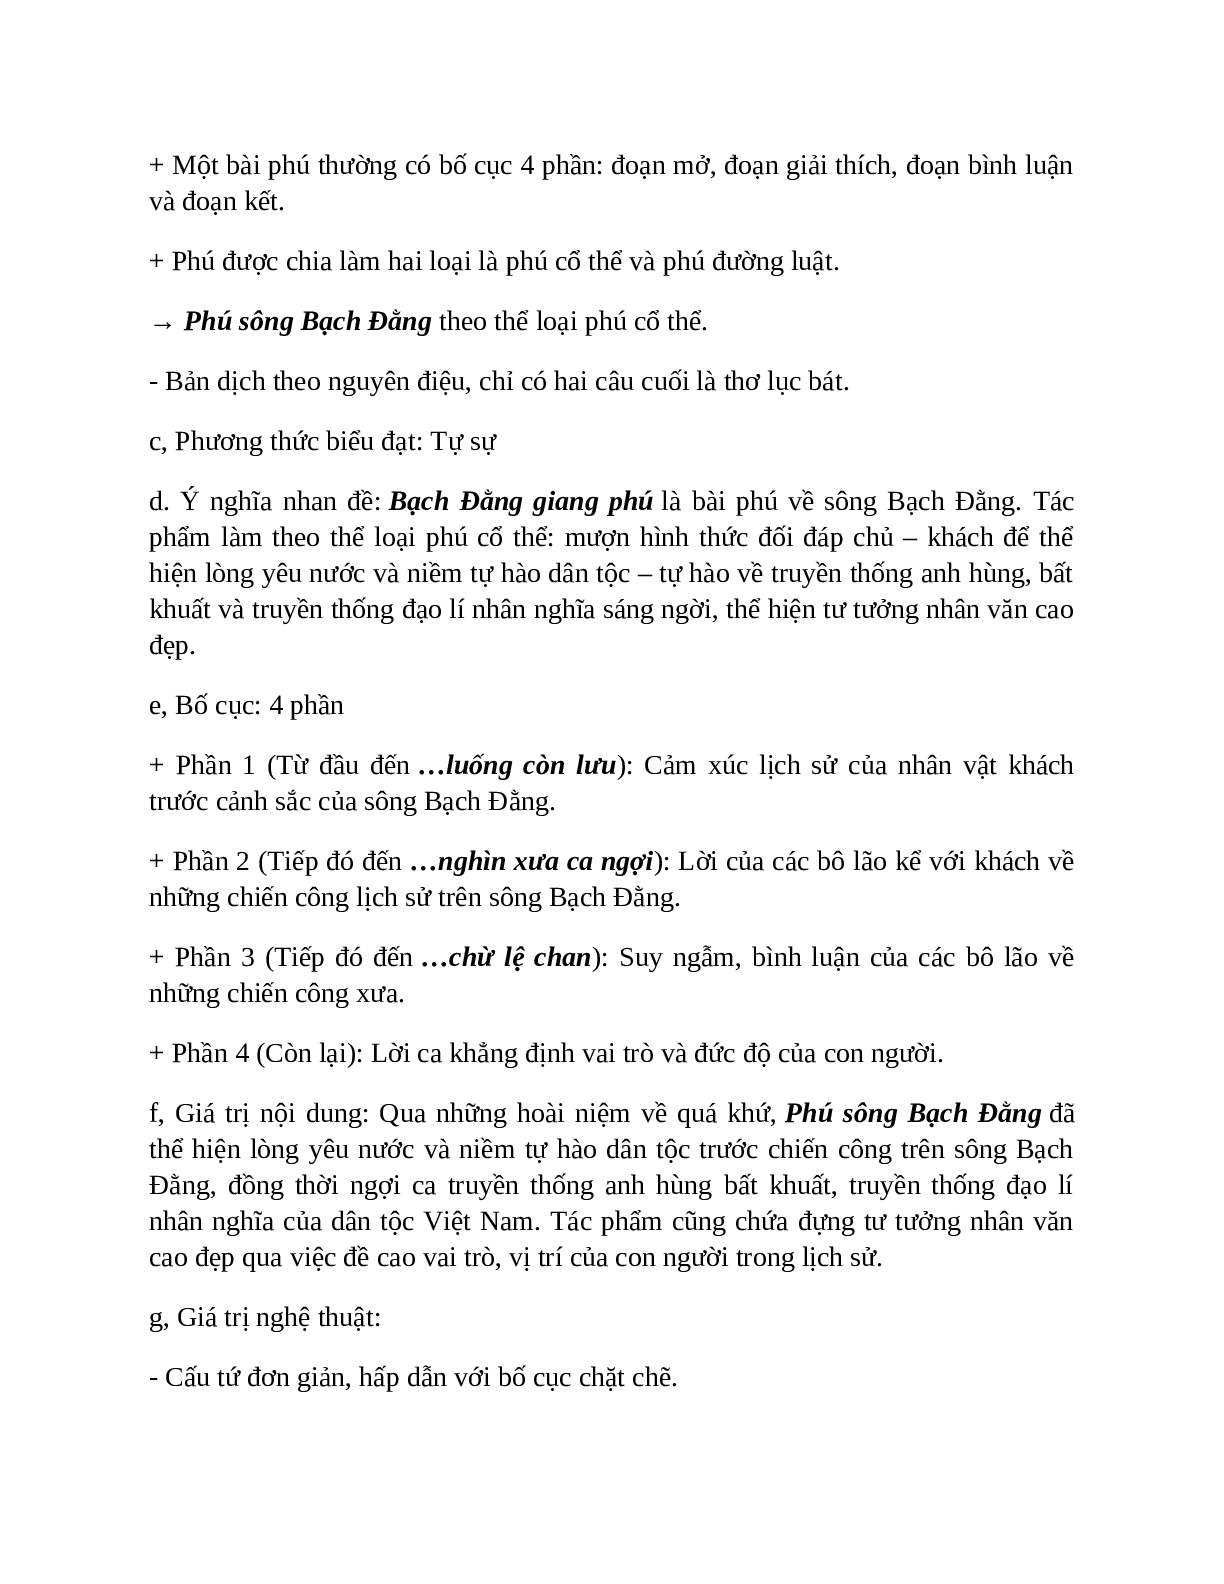 Phú sông Bạch Đằng - Tác giả tác phẩm – Ngữ văn lớp 10 (trang 5)